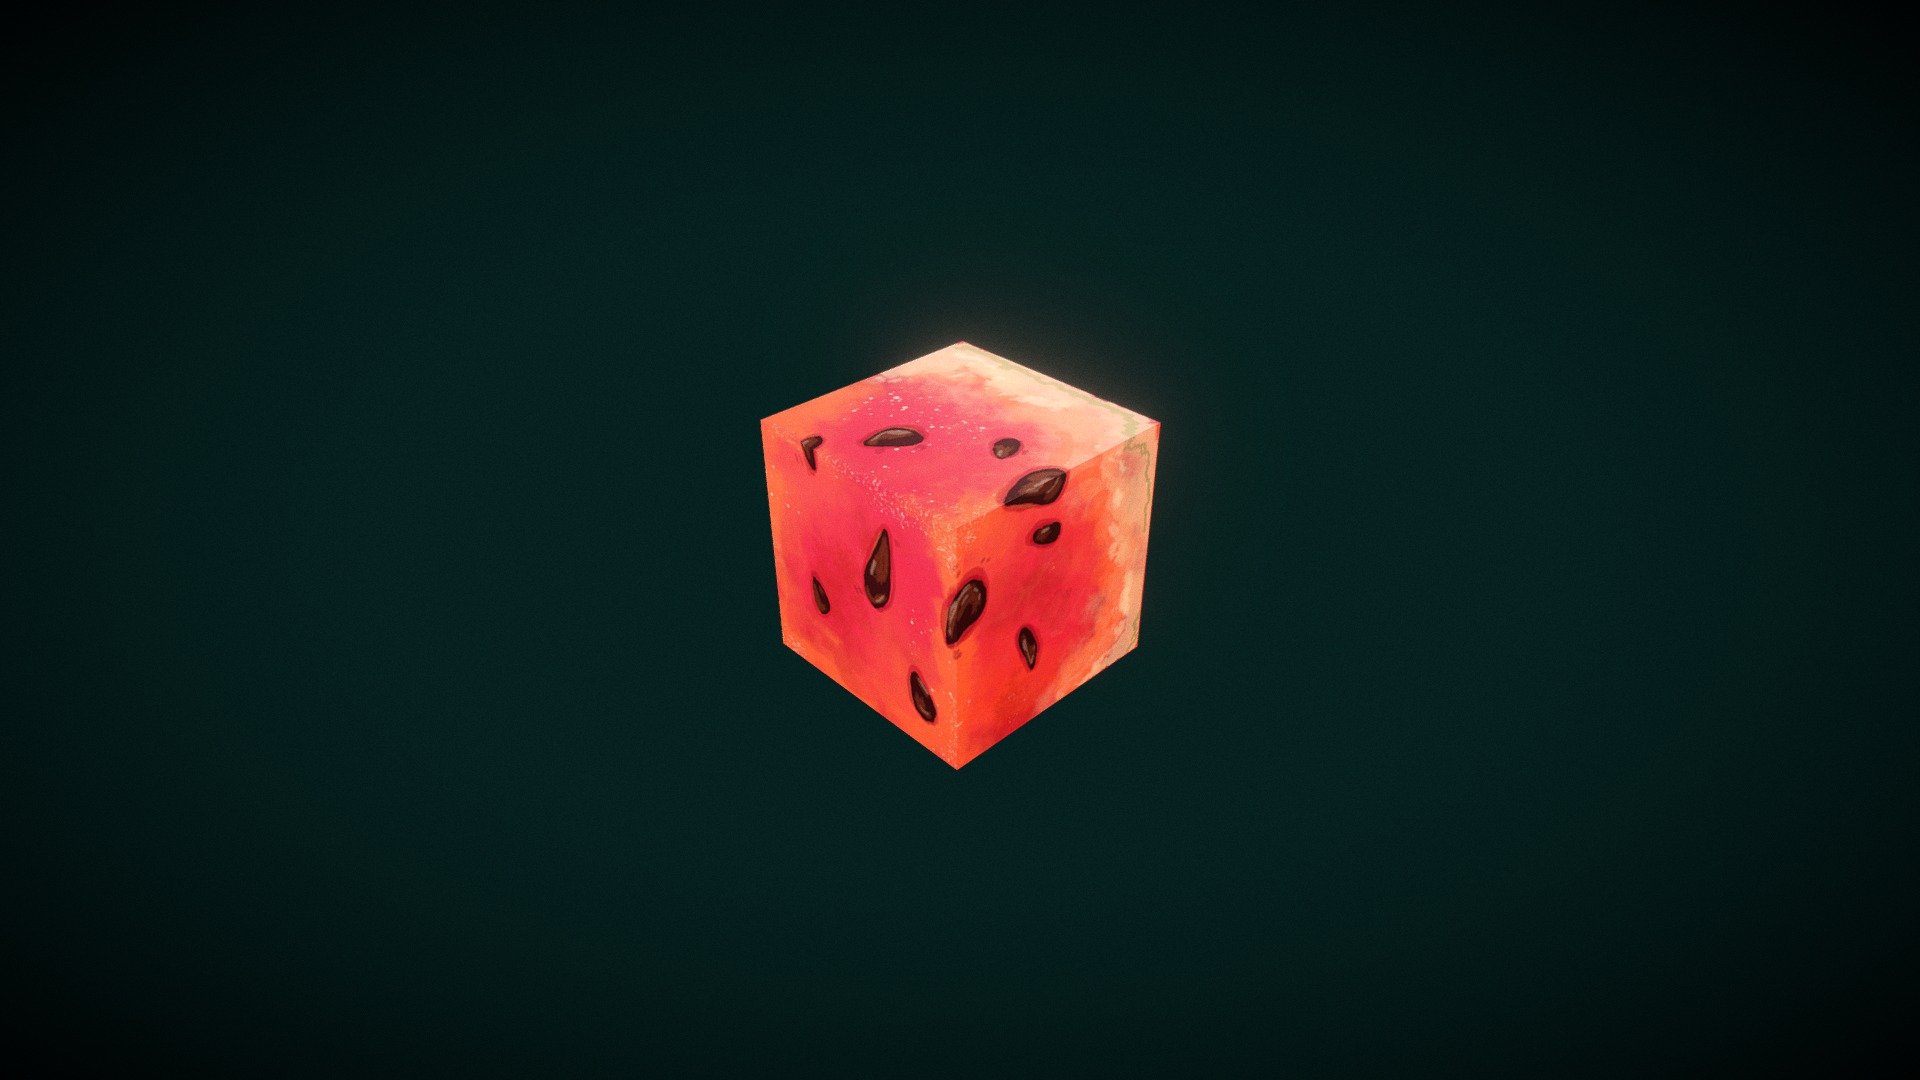 Watermelon Cube - 3D model by gorgon season (@gorgonseason) 3d model